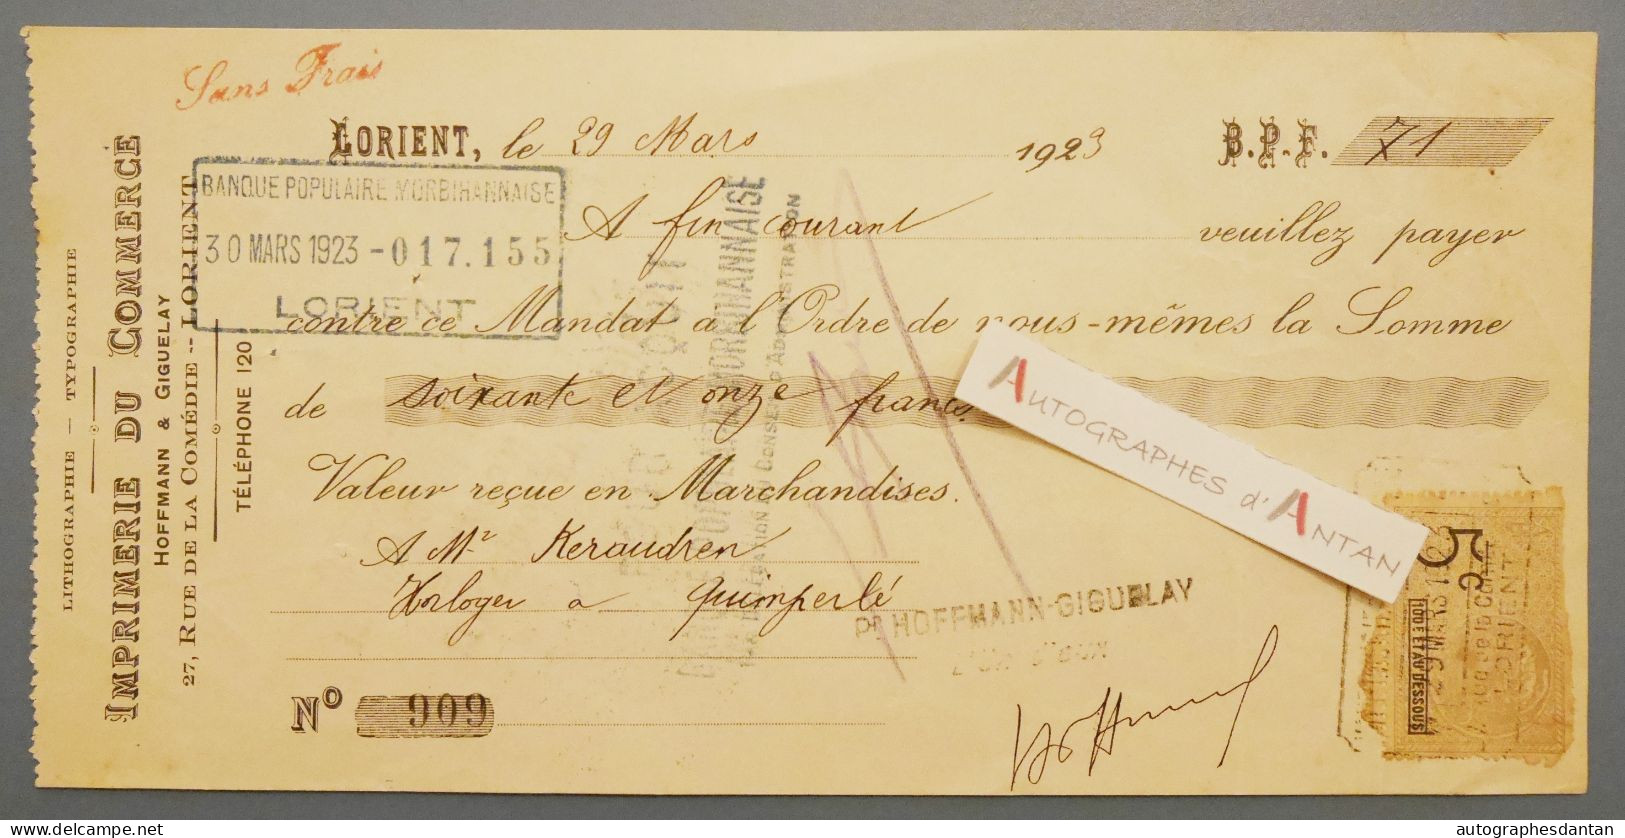 ● Lorient 1923 Imprimerie Du Commerce à M Keraudren Horloger à Quimperlé - Mandat Lettre De Change - Lettres De Change